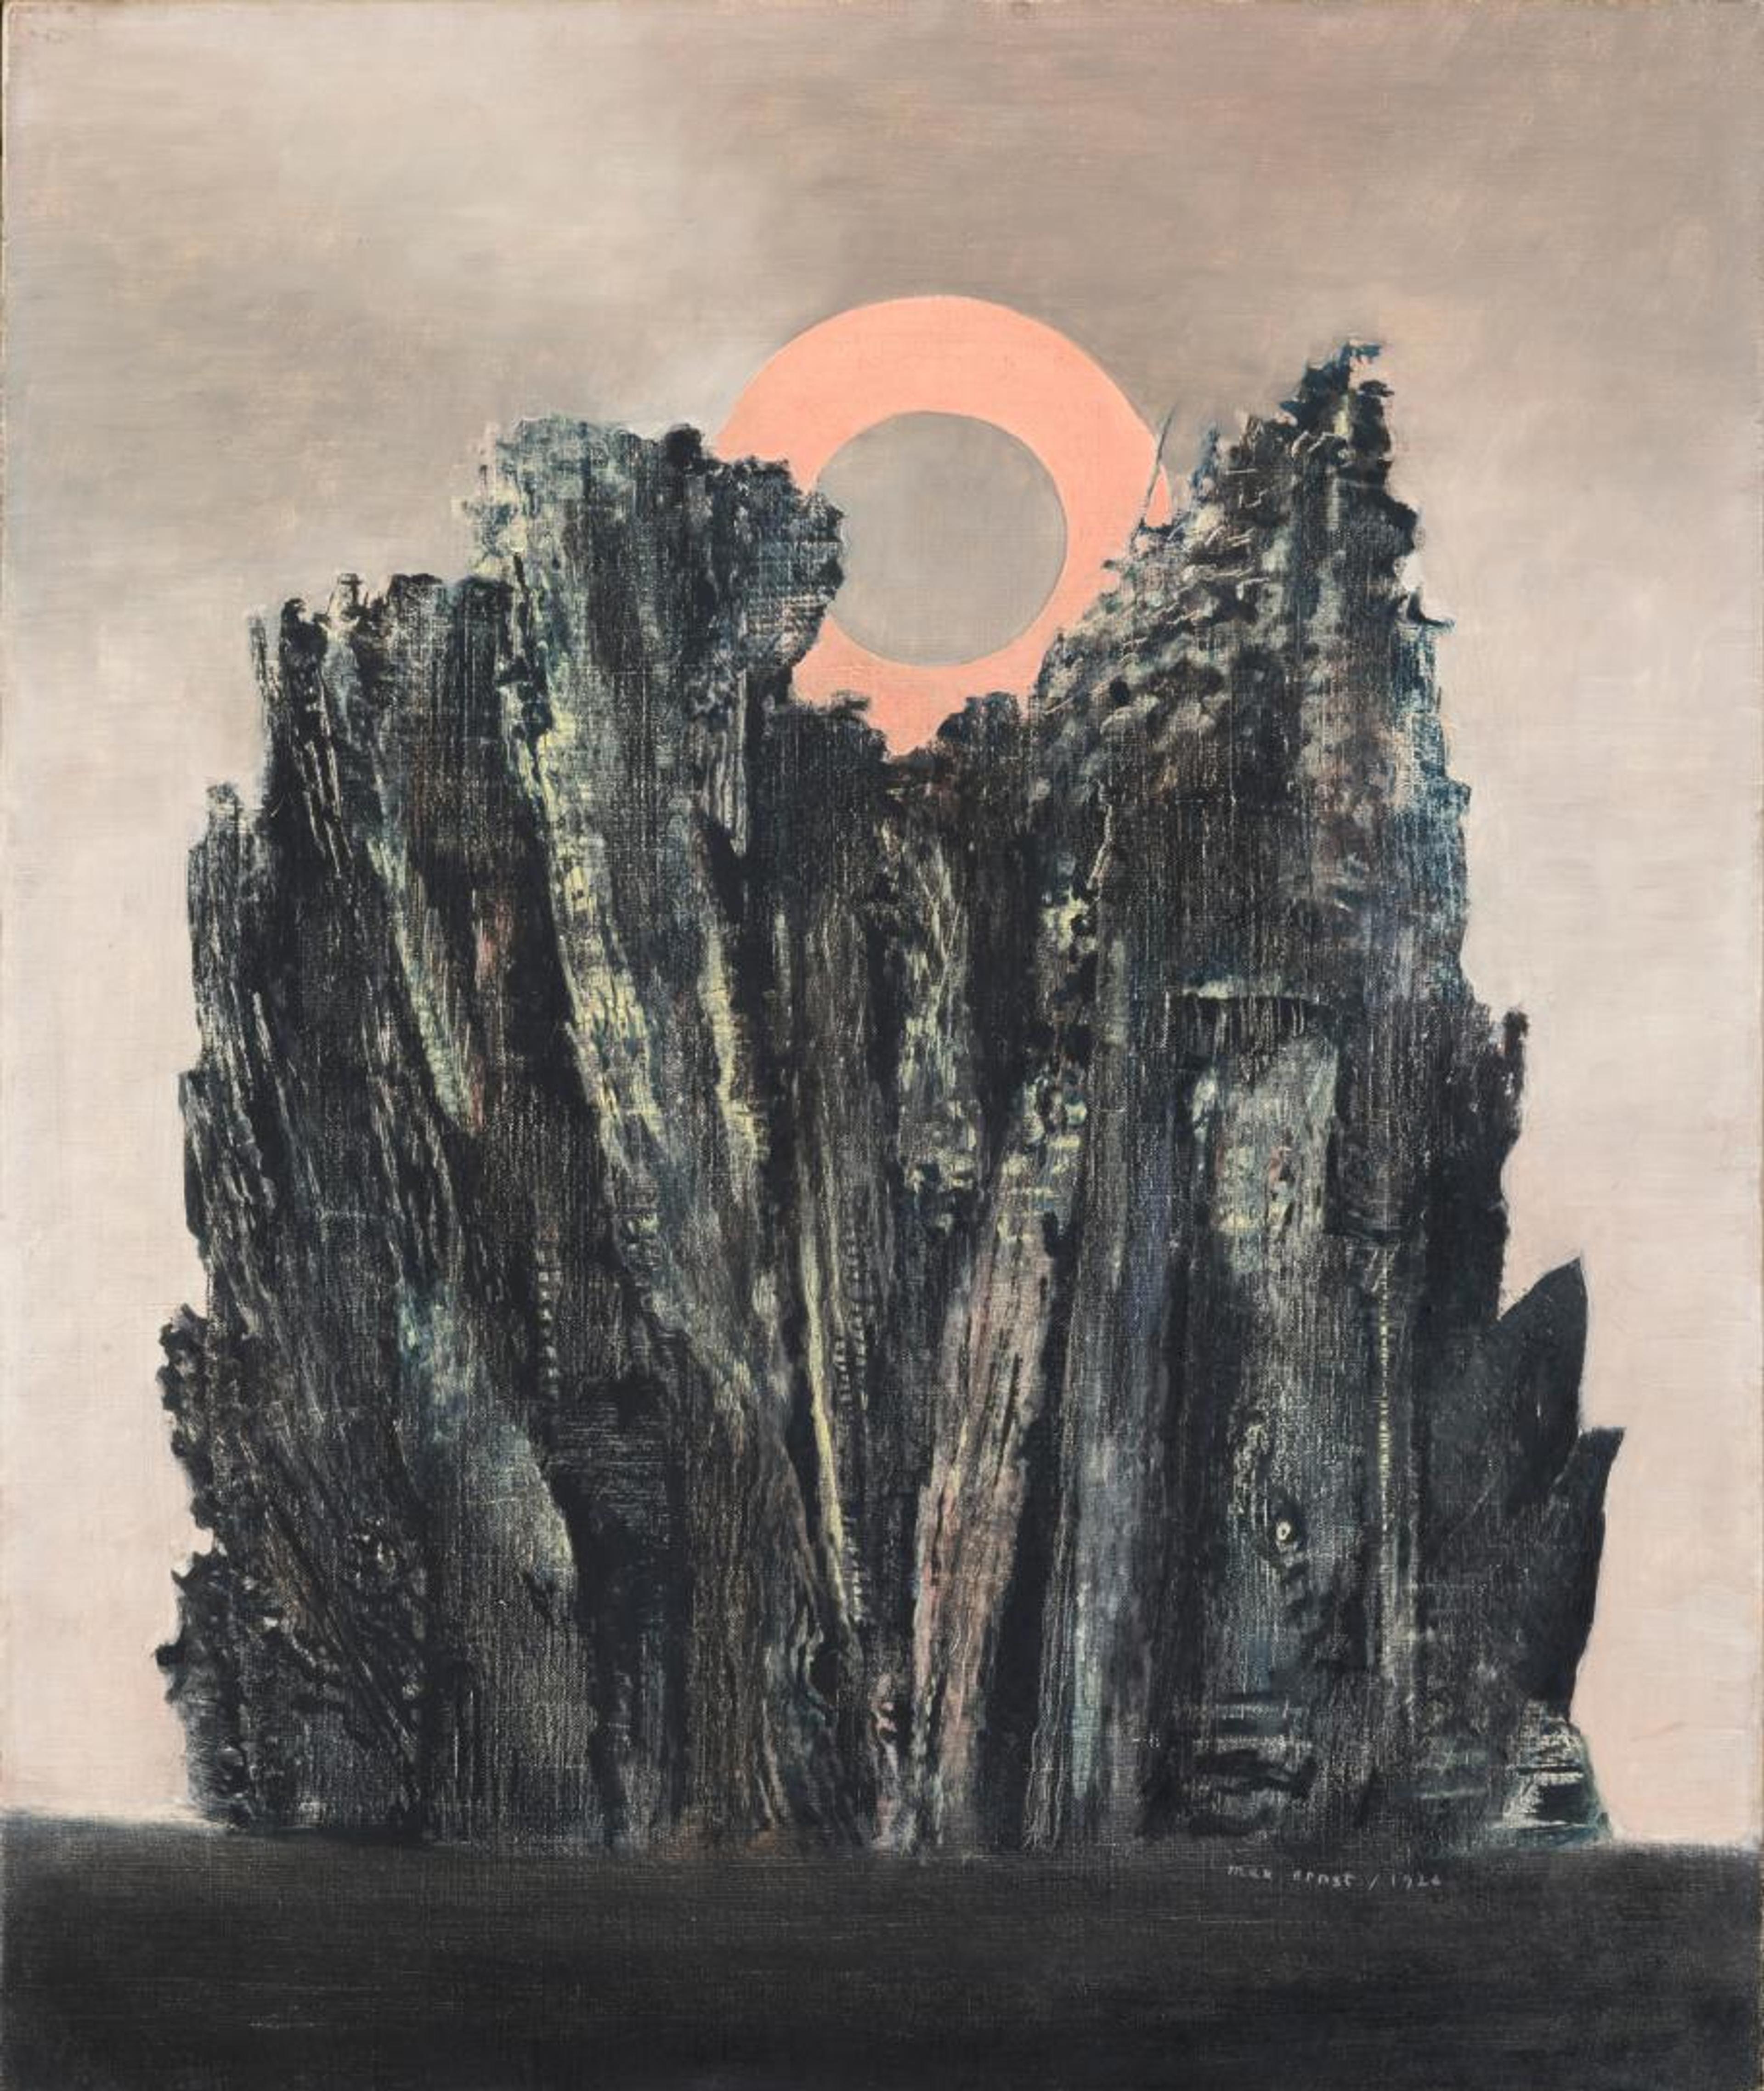 Et maleri som viser en slags skog dominerende i bildet, mørk grå mot en grå-rosa bakgrunn. En rund form som en slags sol over skogen.